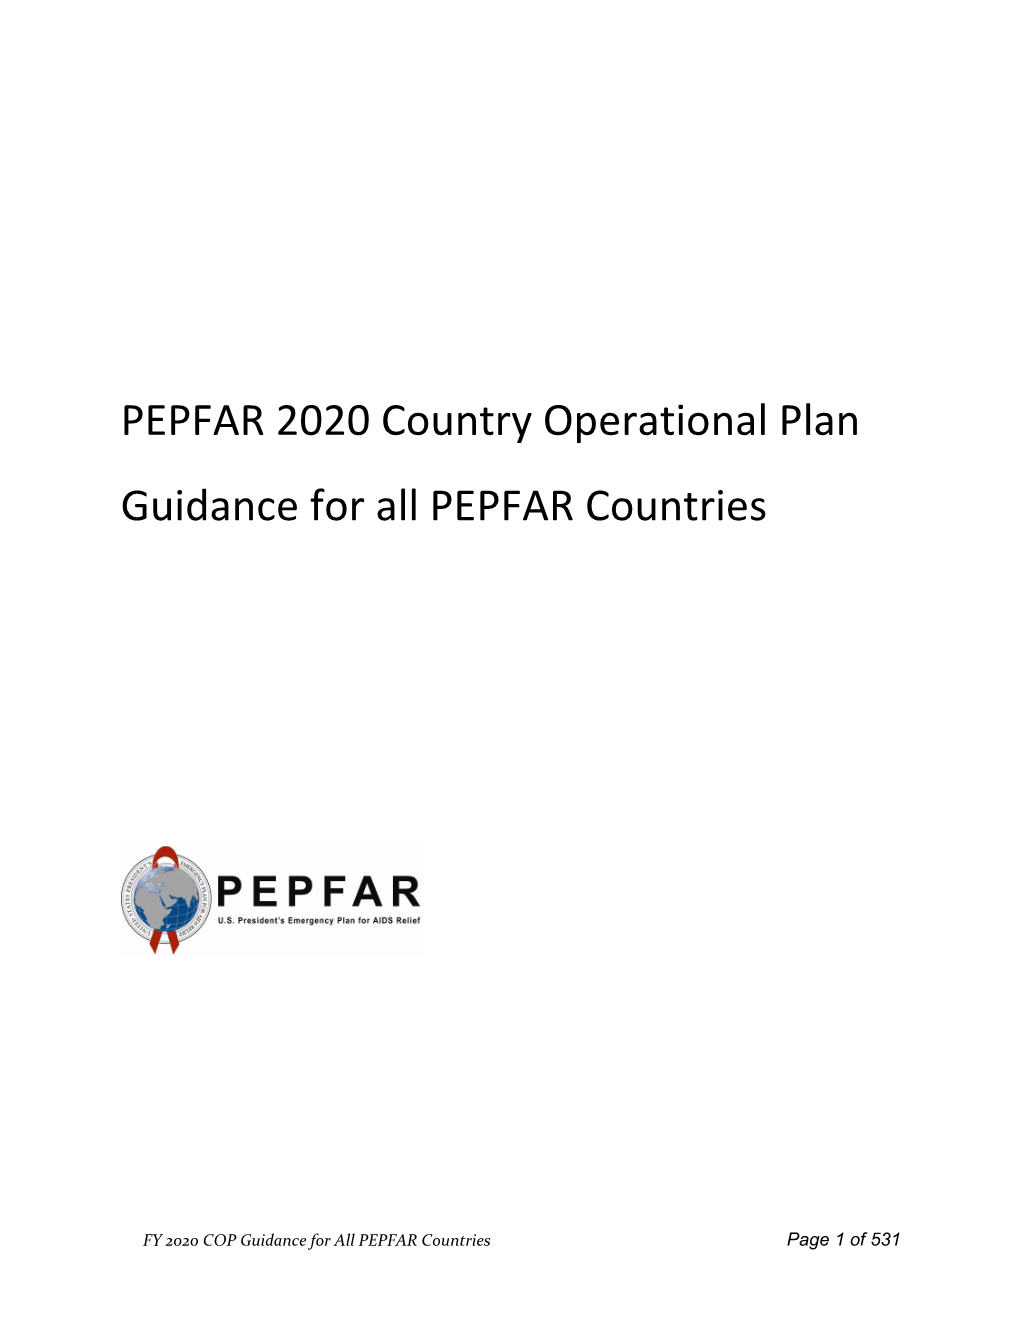 PEPFAR 2020 COP Guidance